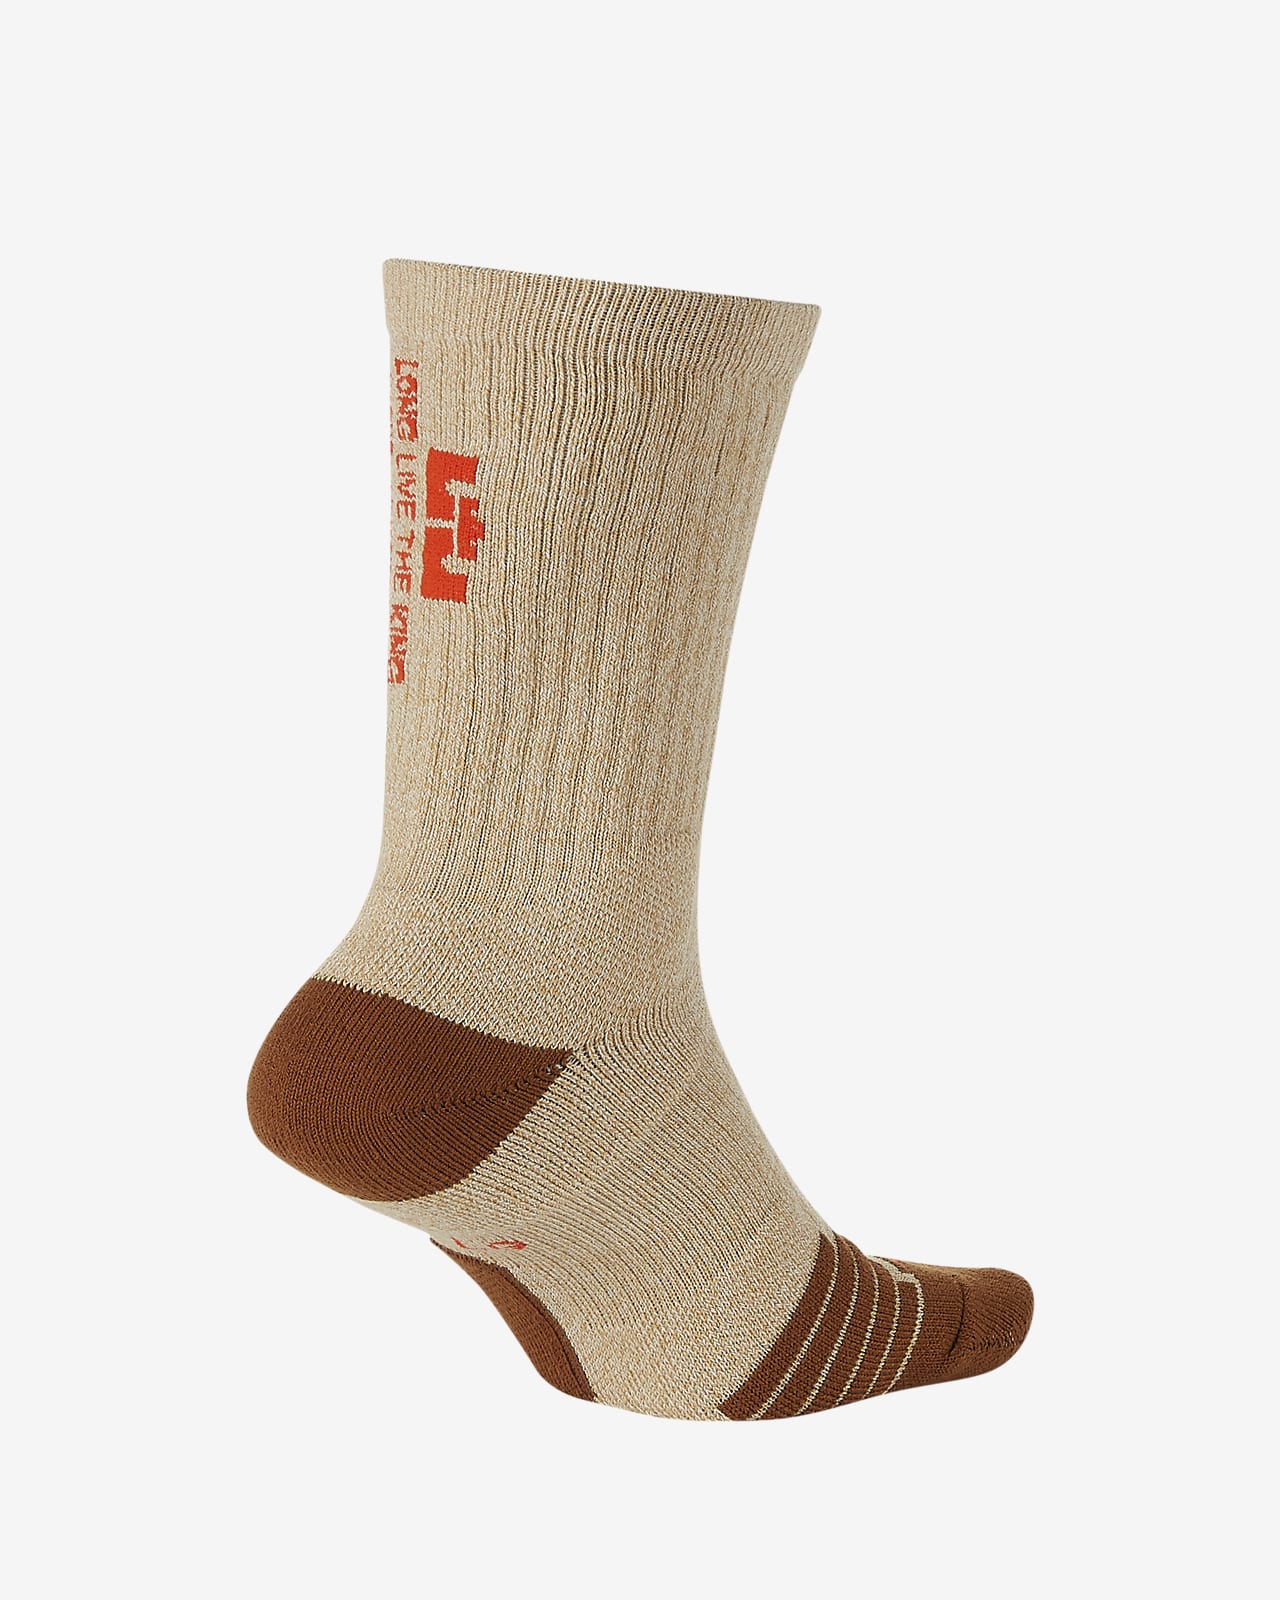 nike elite socks canada